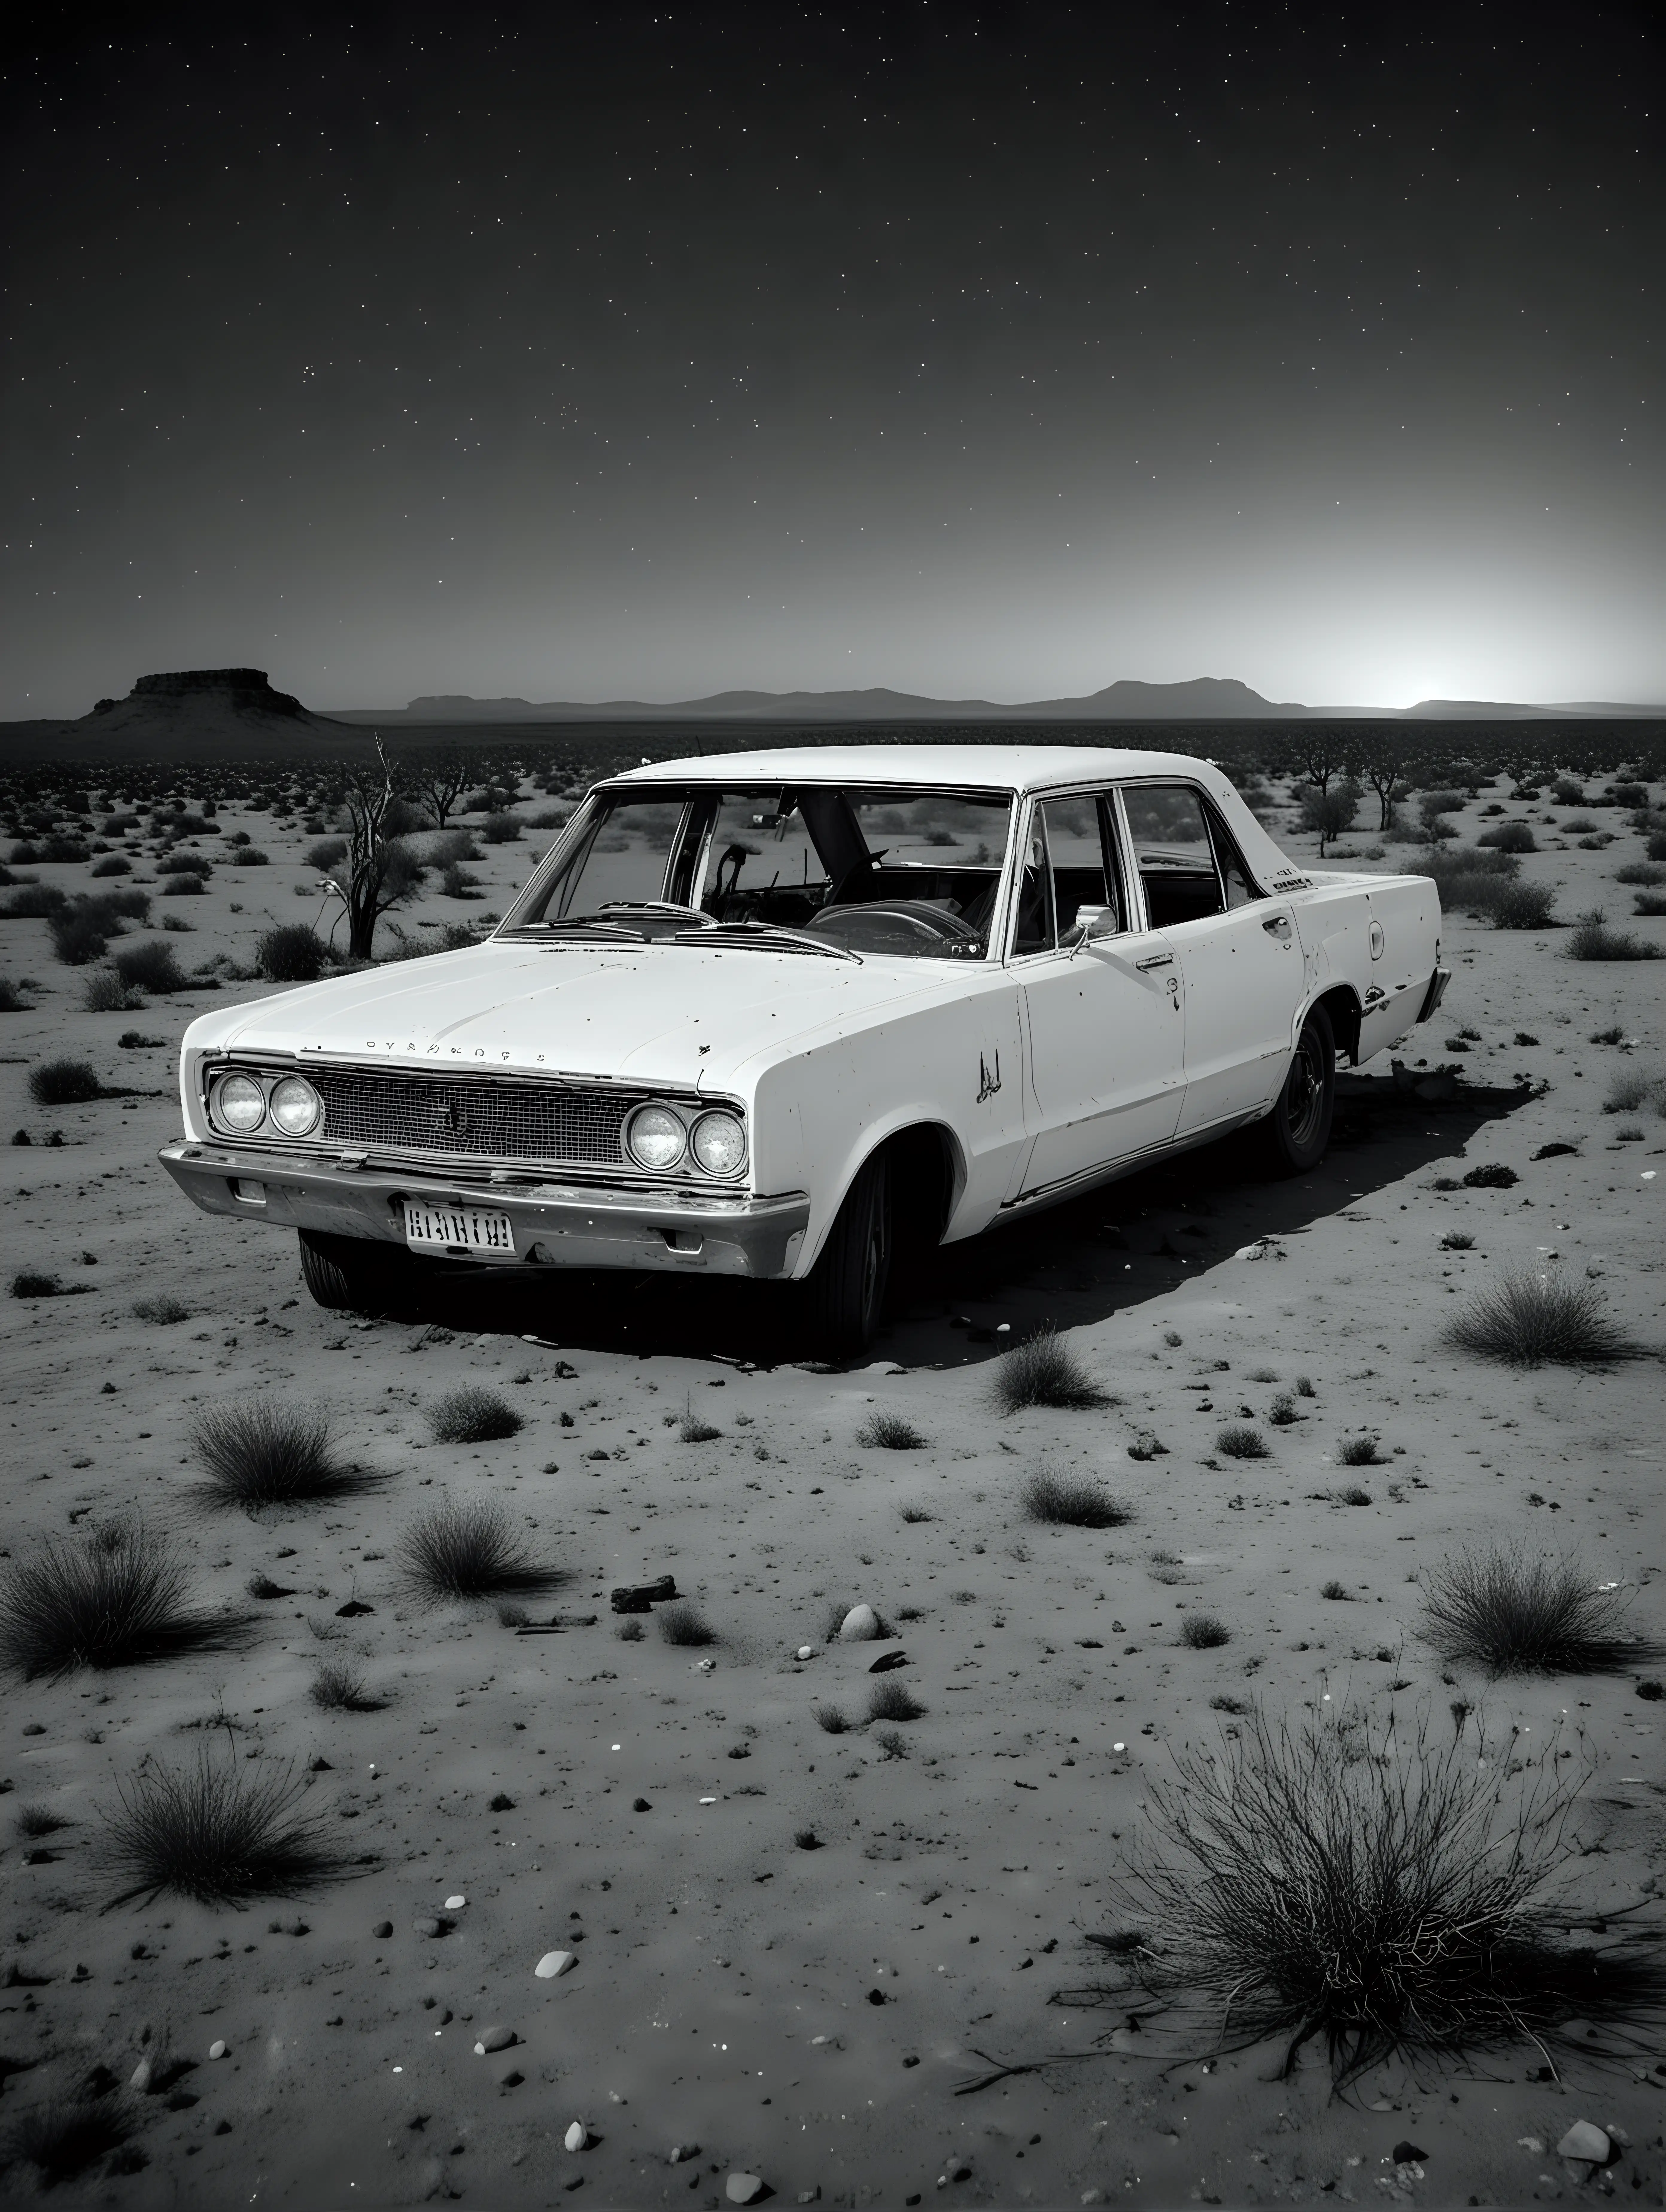 Abandoned 1967 Chrysler Valiant in Moonlit Australian Desert